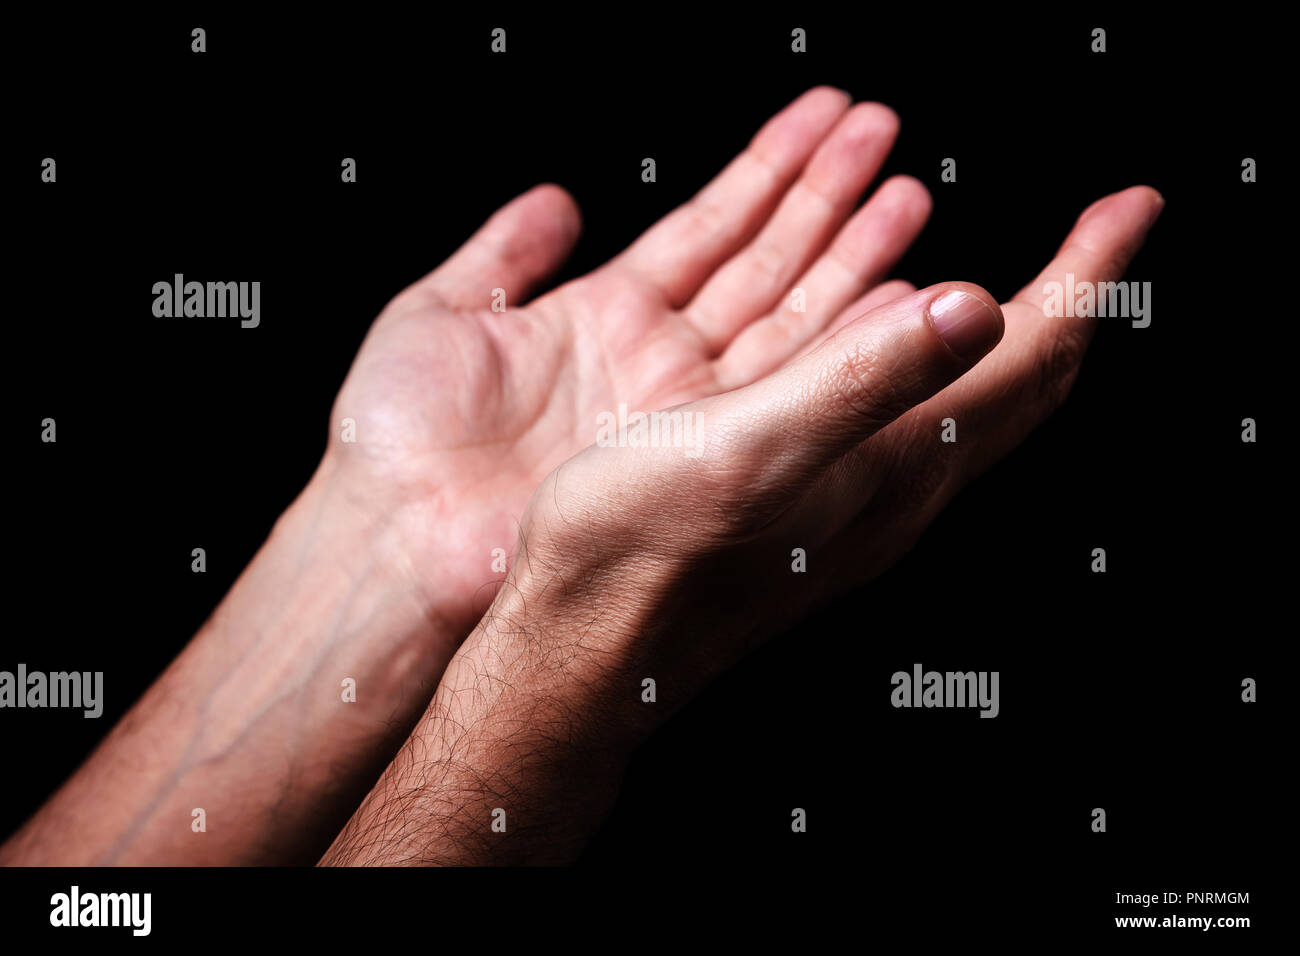 Männliche Hände betend mit Handflächen nach oben ausgestreckten Armen. Schwarzen Hintergrund. Nahaufnahme von Hand. Konzept für Gebet, Glauben, Religion, religiös, Anbetung Stockfoto